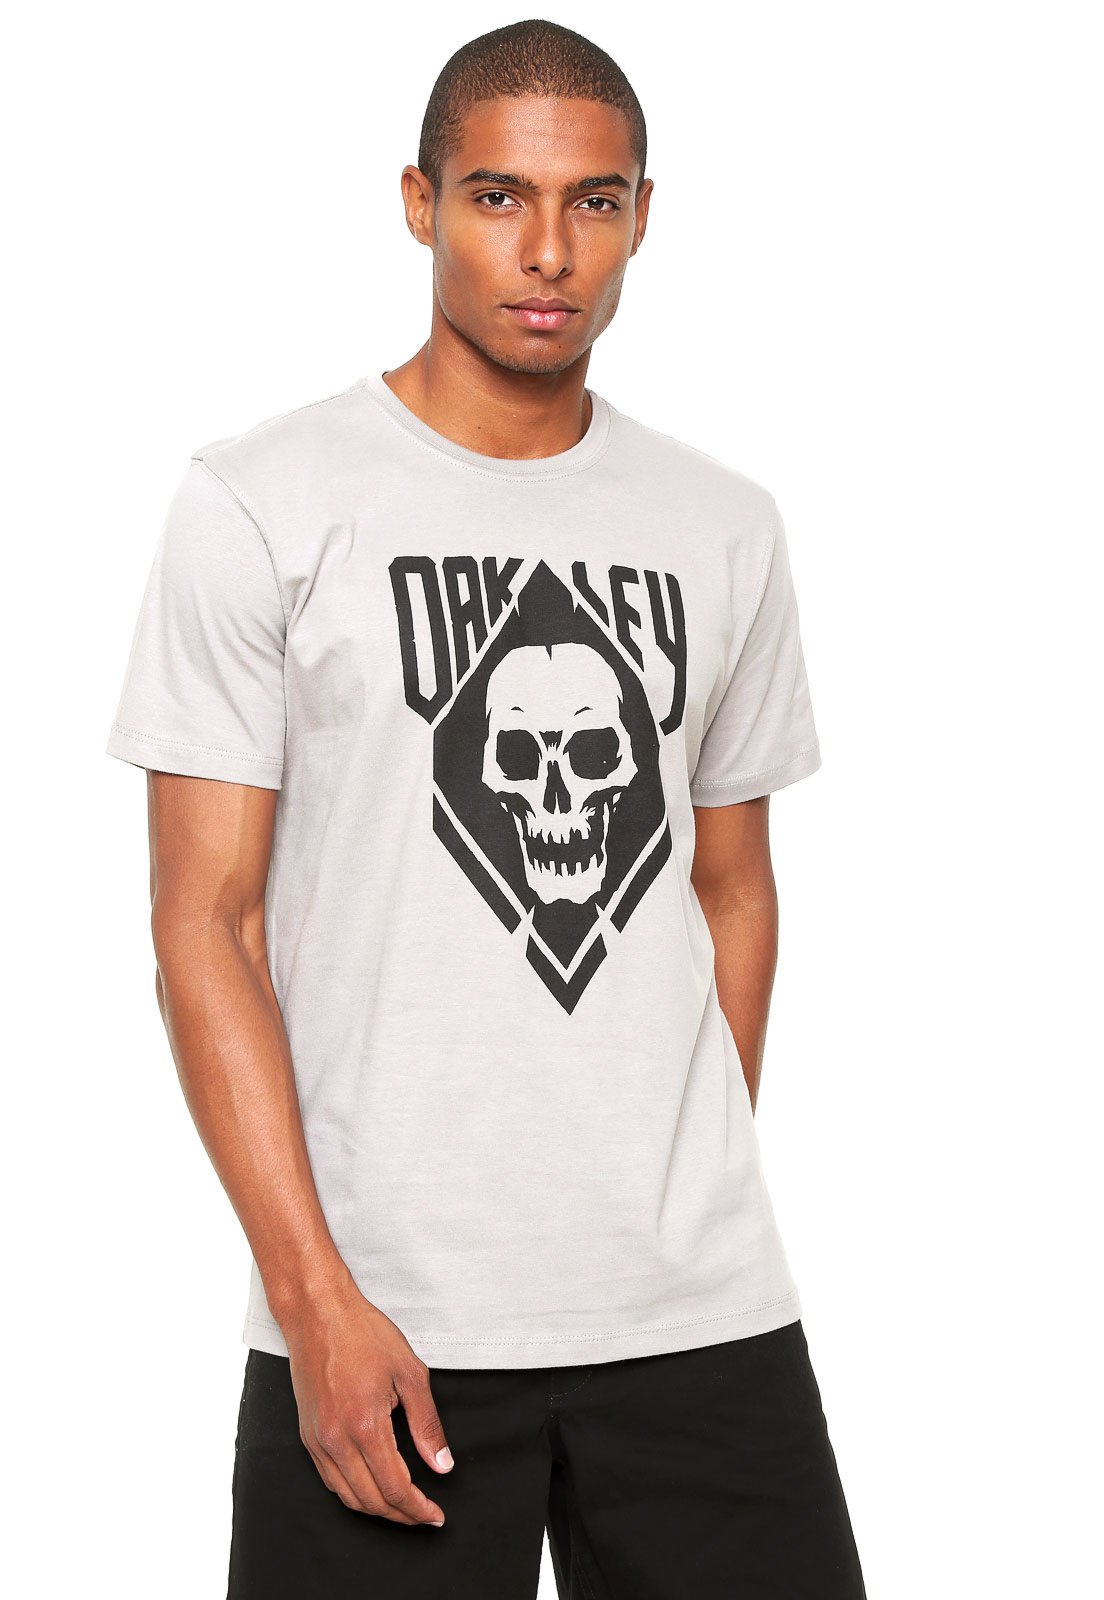 Camiseta Oakley Skull - Roupas - Santo Inácio, Curitiba 1252663161